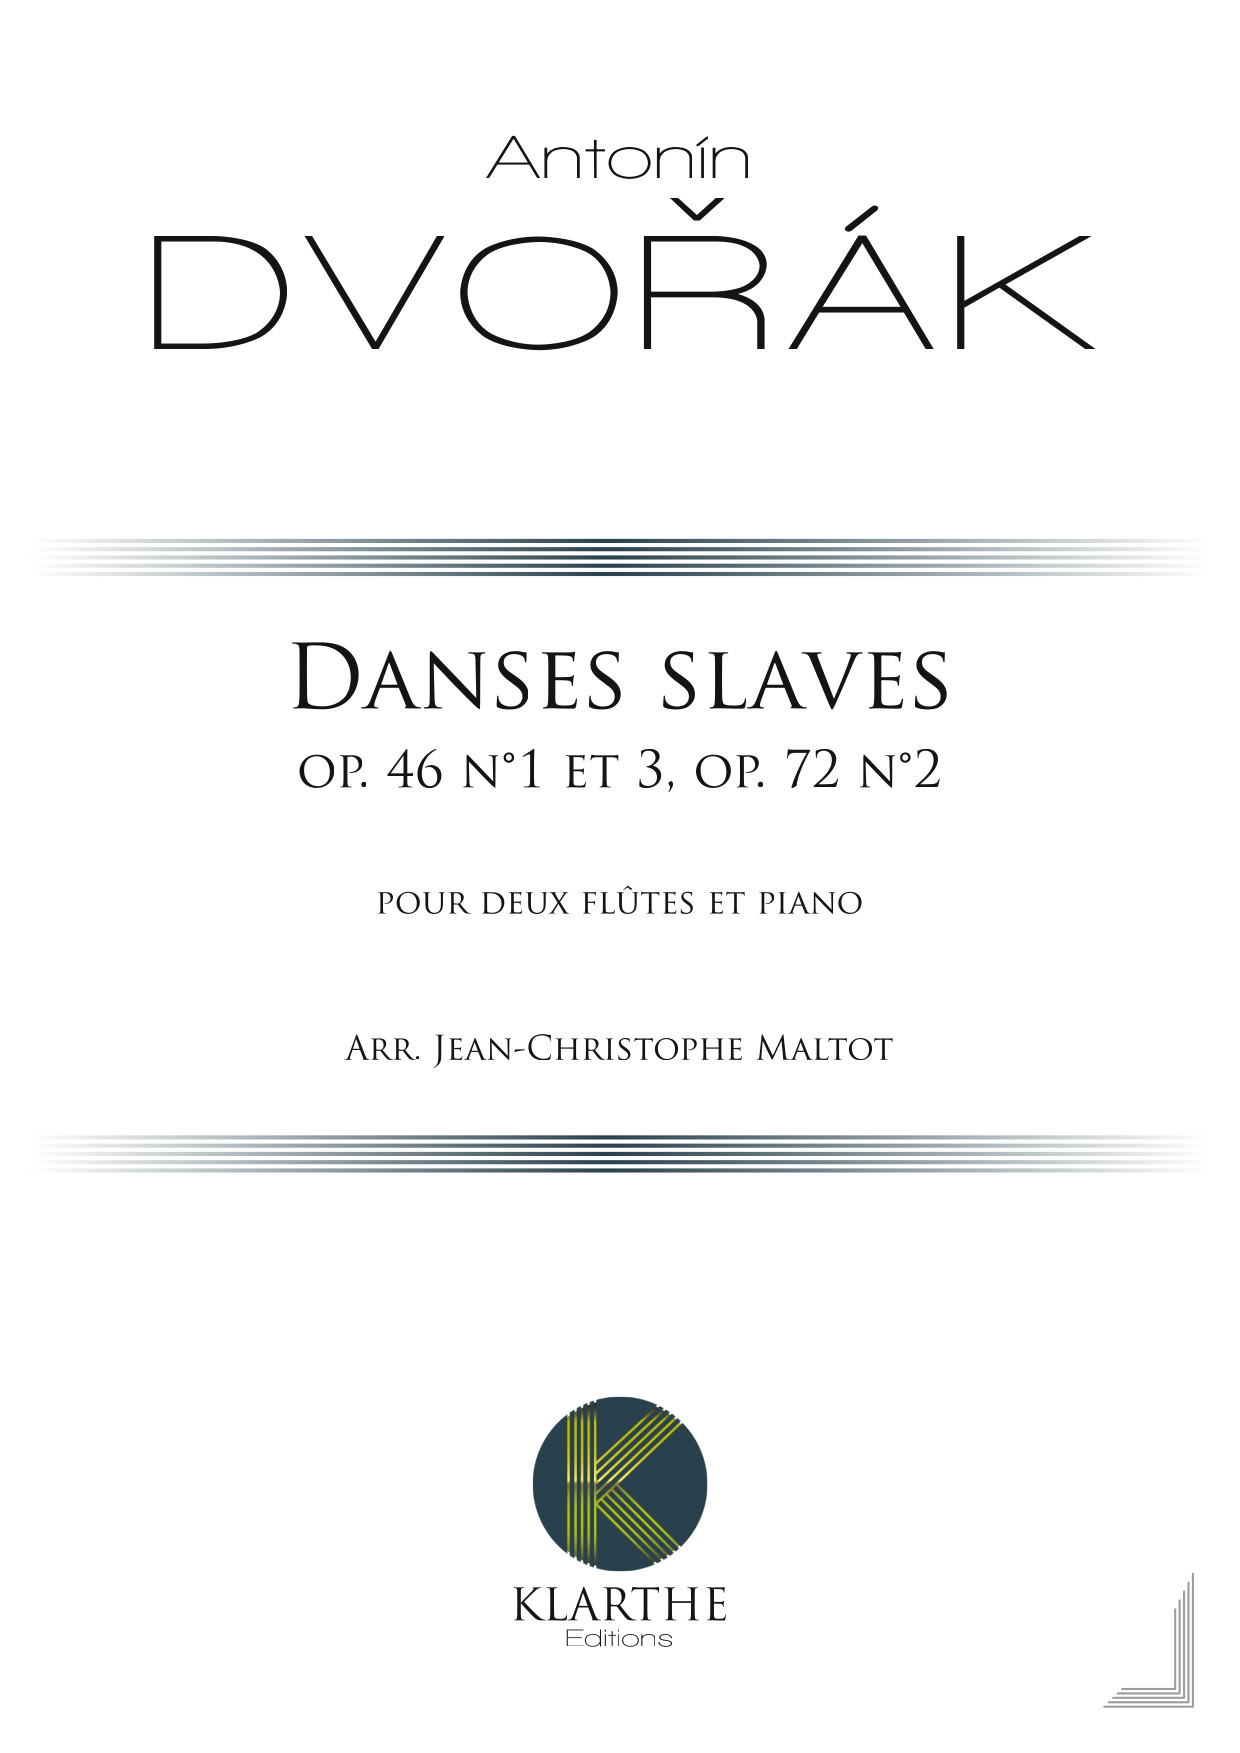 Danses slaves op. 46 n°1 et 3, op. 72 n°2 (DVORAK ANTONIN)